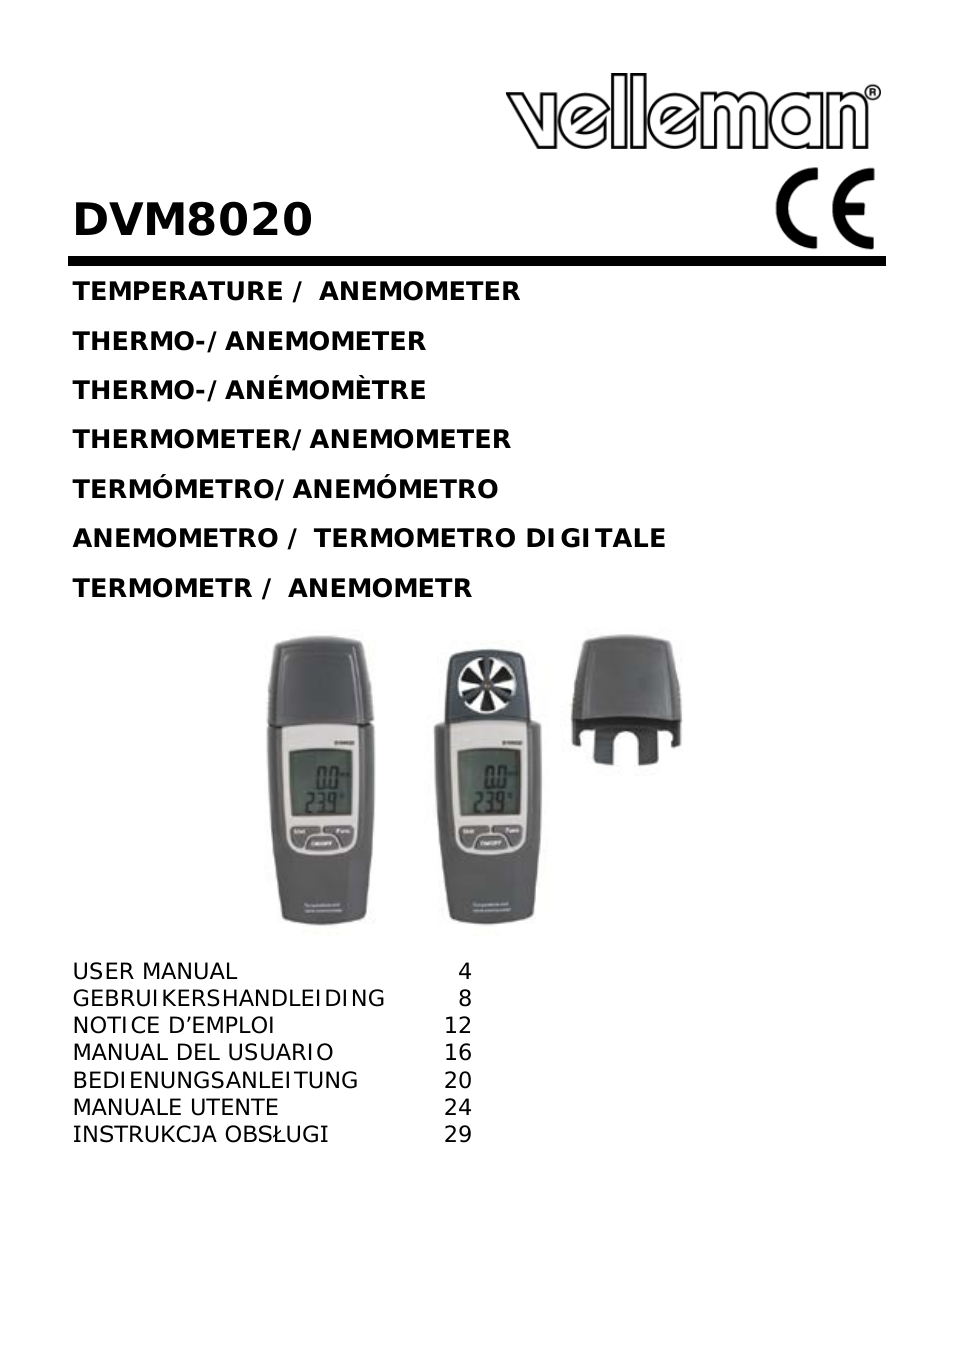 DVM8020